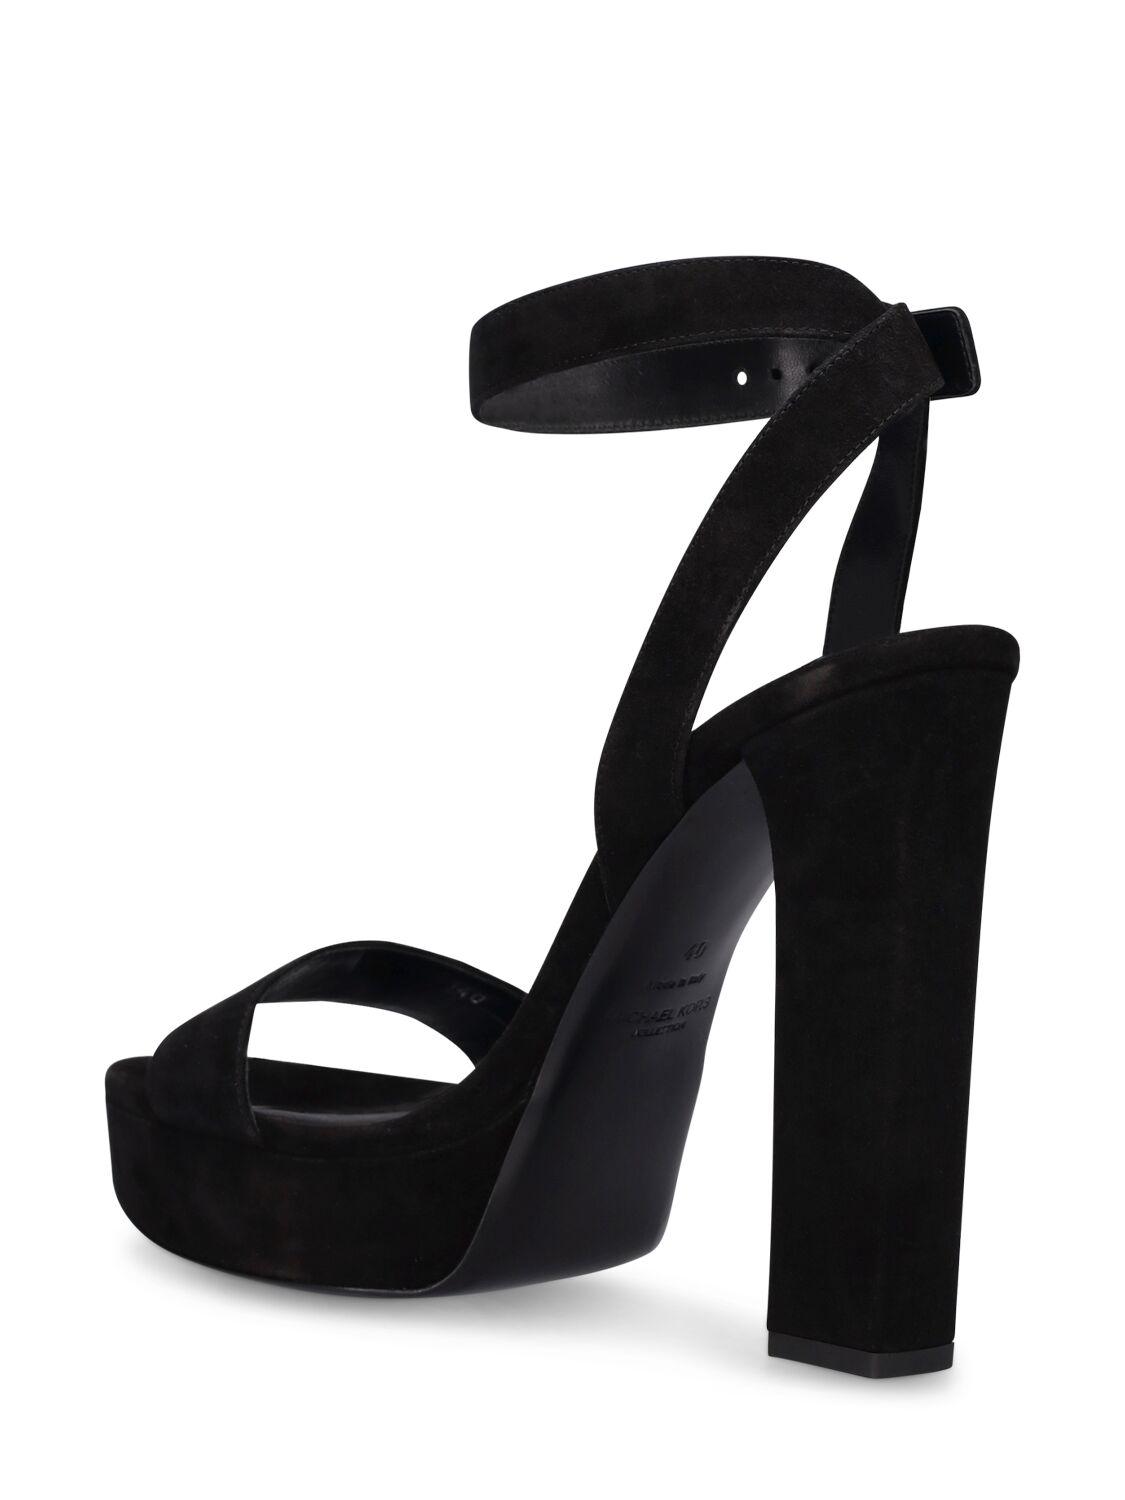 Rendezvous Platform Pumps - Black / 43 | Heels, Fashion shoes, Pretty shoes